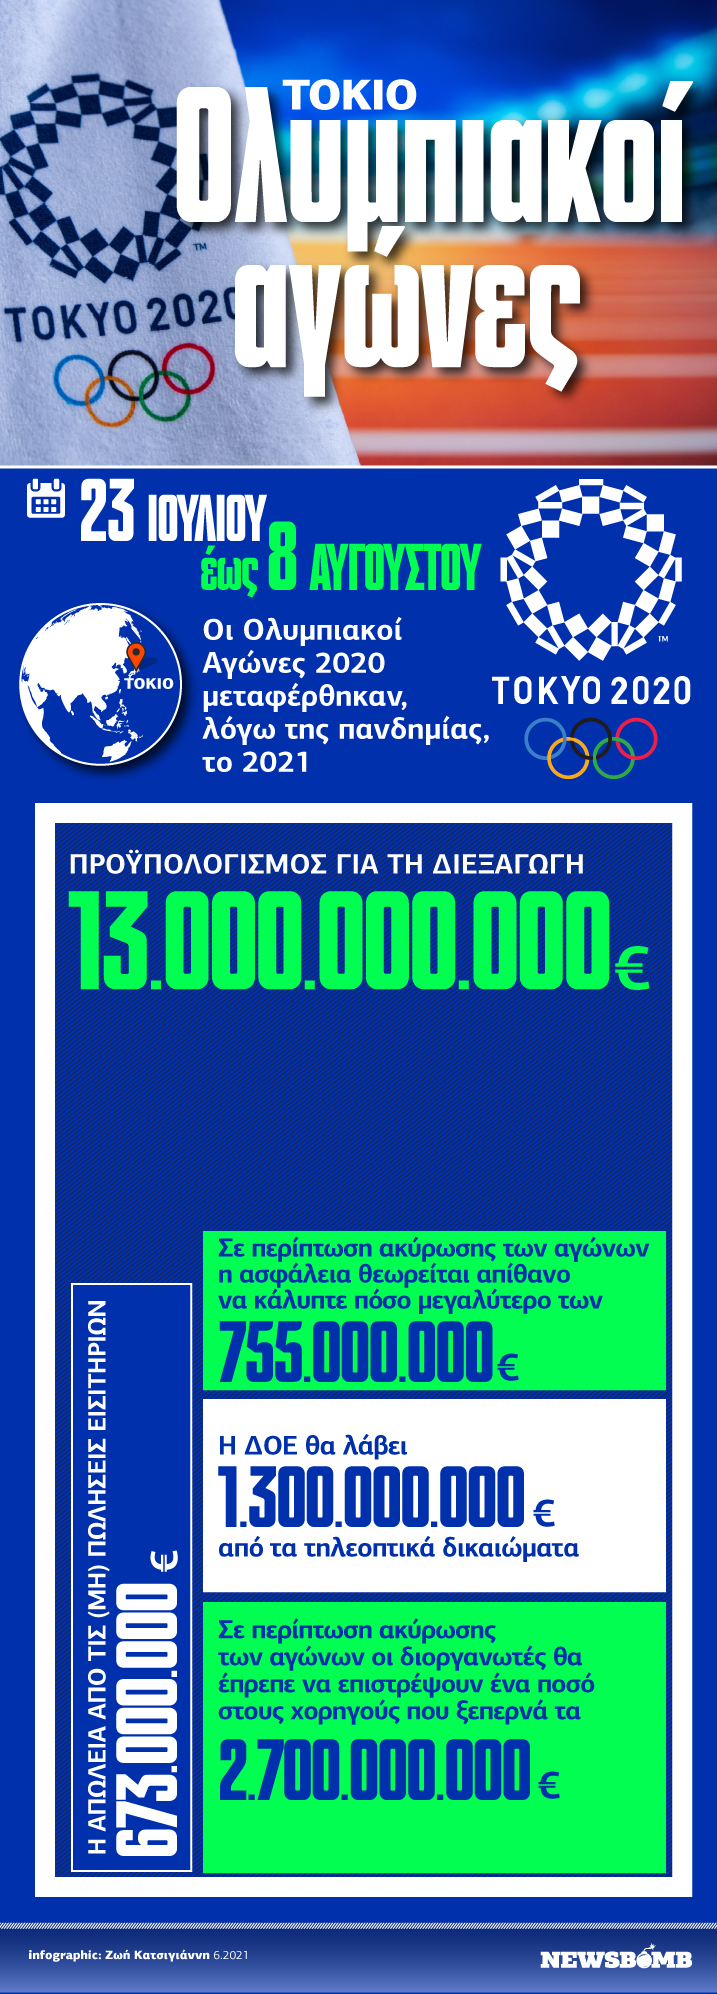 Tokyo-2021-Olympic-Games.jpg